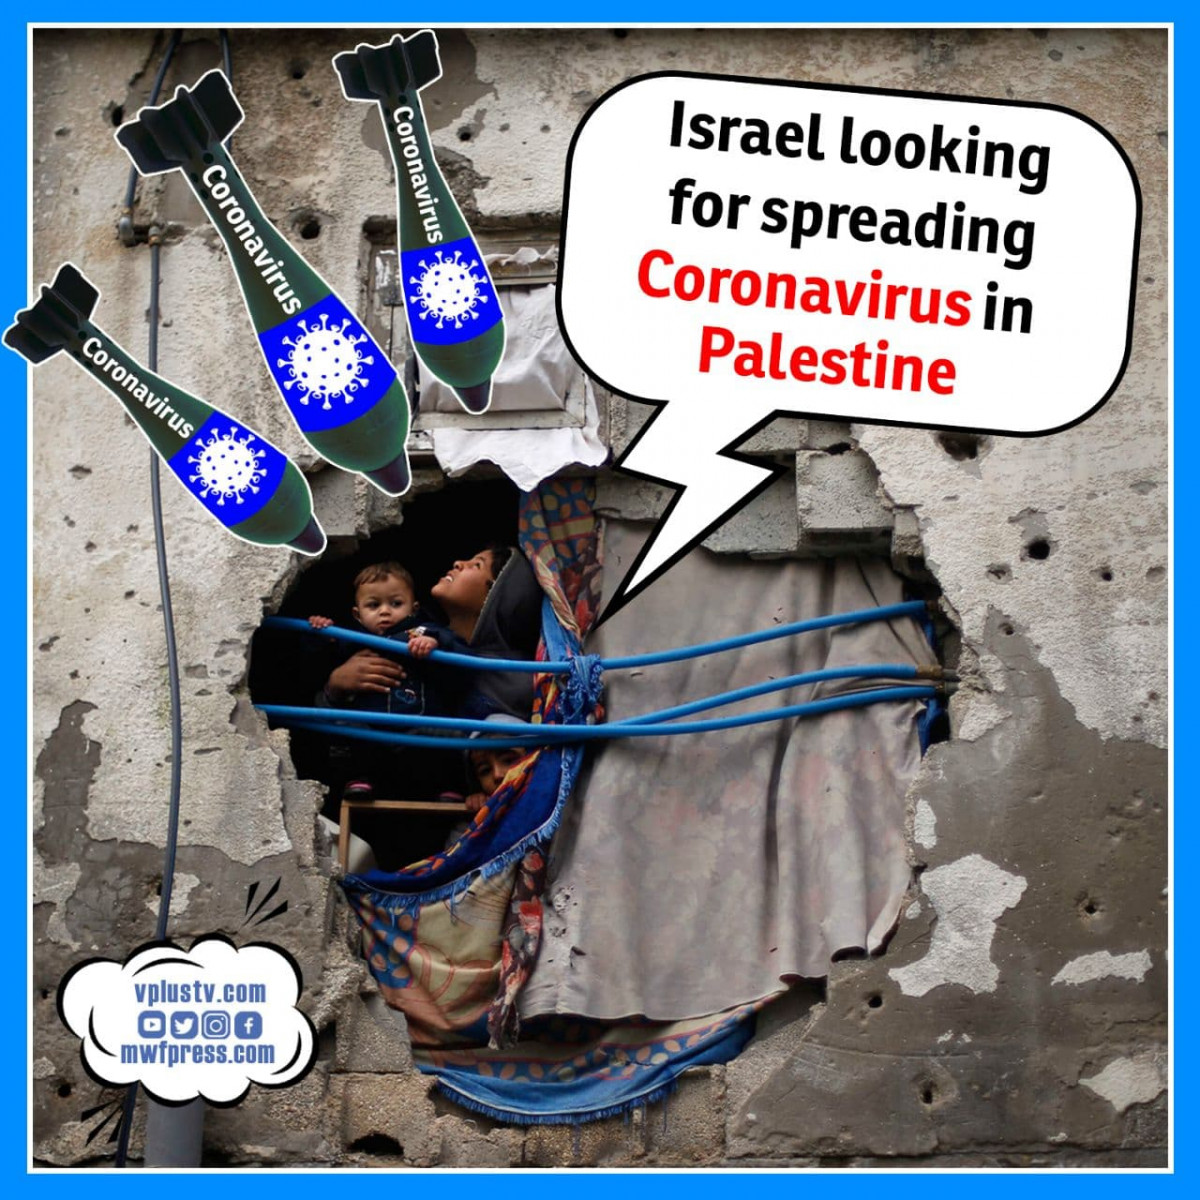 Israel looking for spreading Coronavirus in Palestine